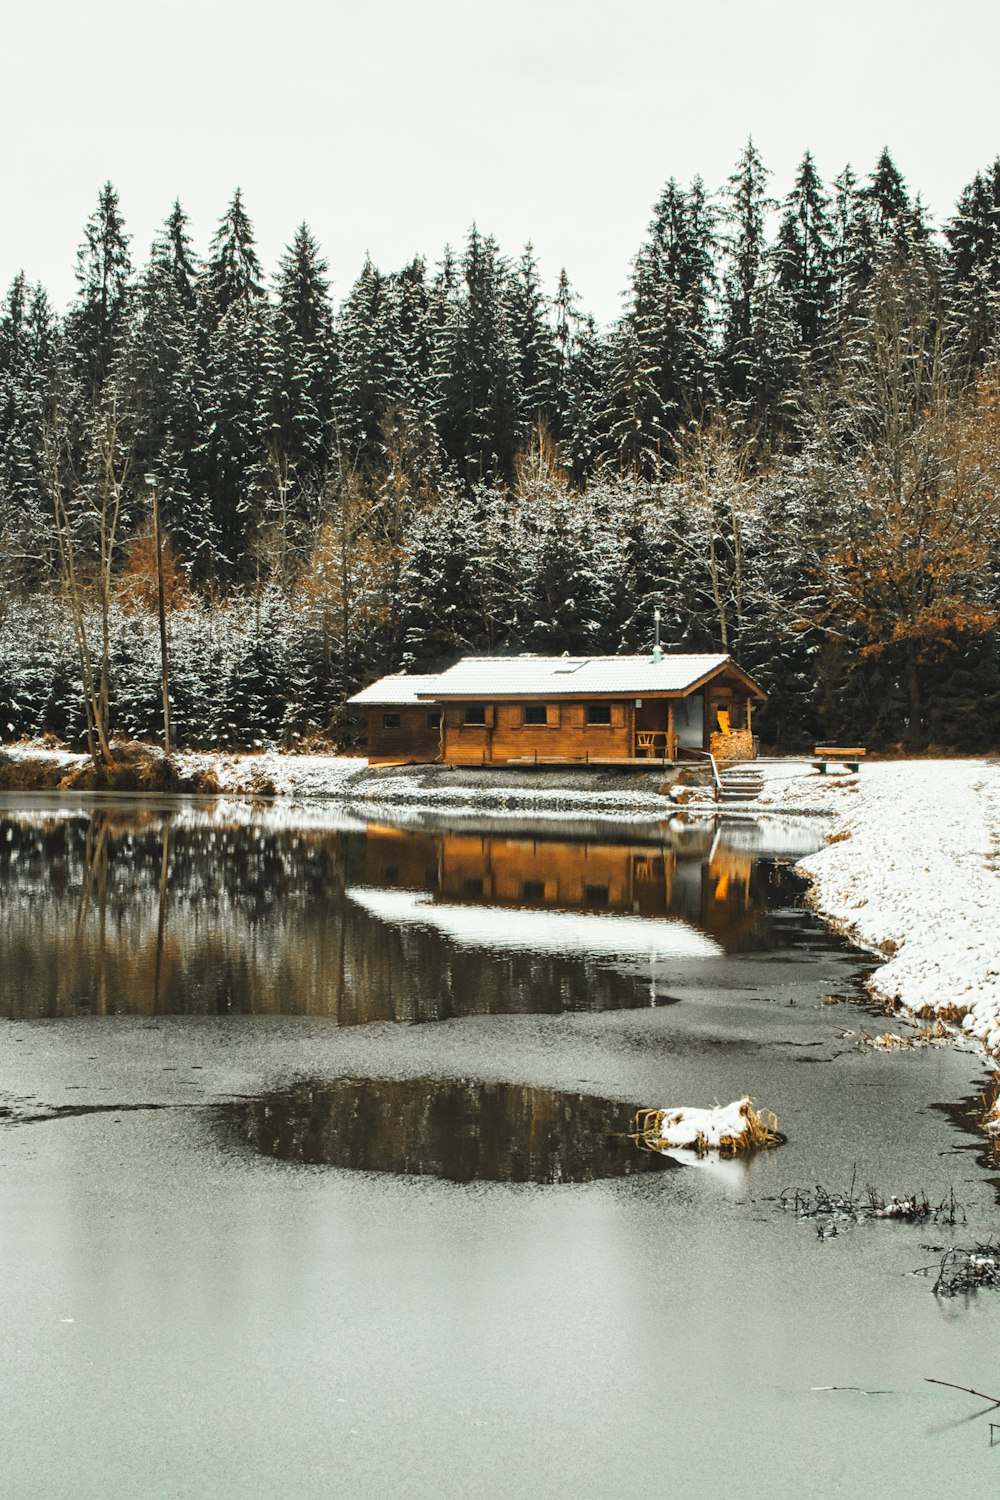 Braunes Holzhaus in der Nähe des Sees, tagsüber von Bäumen umgeben